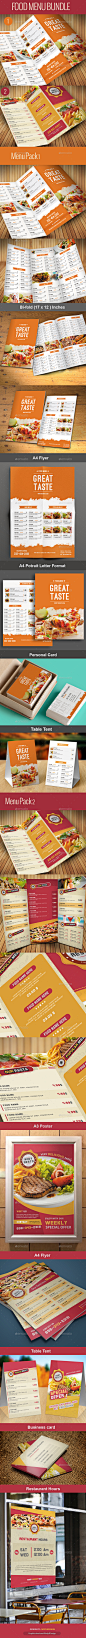 Food Menu Bundle - Food Menus Print Templates